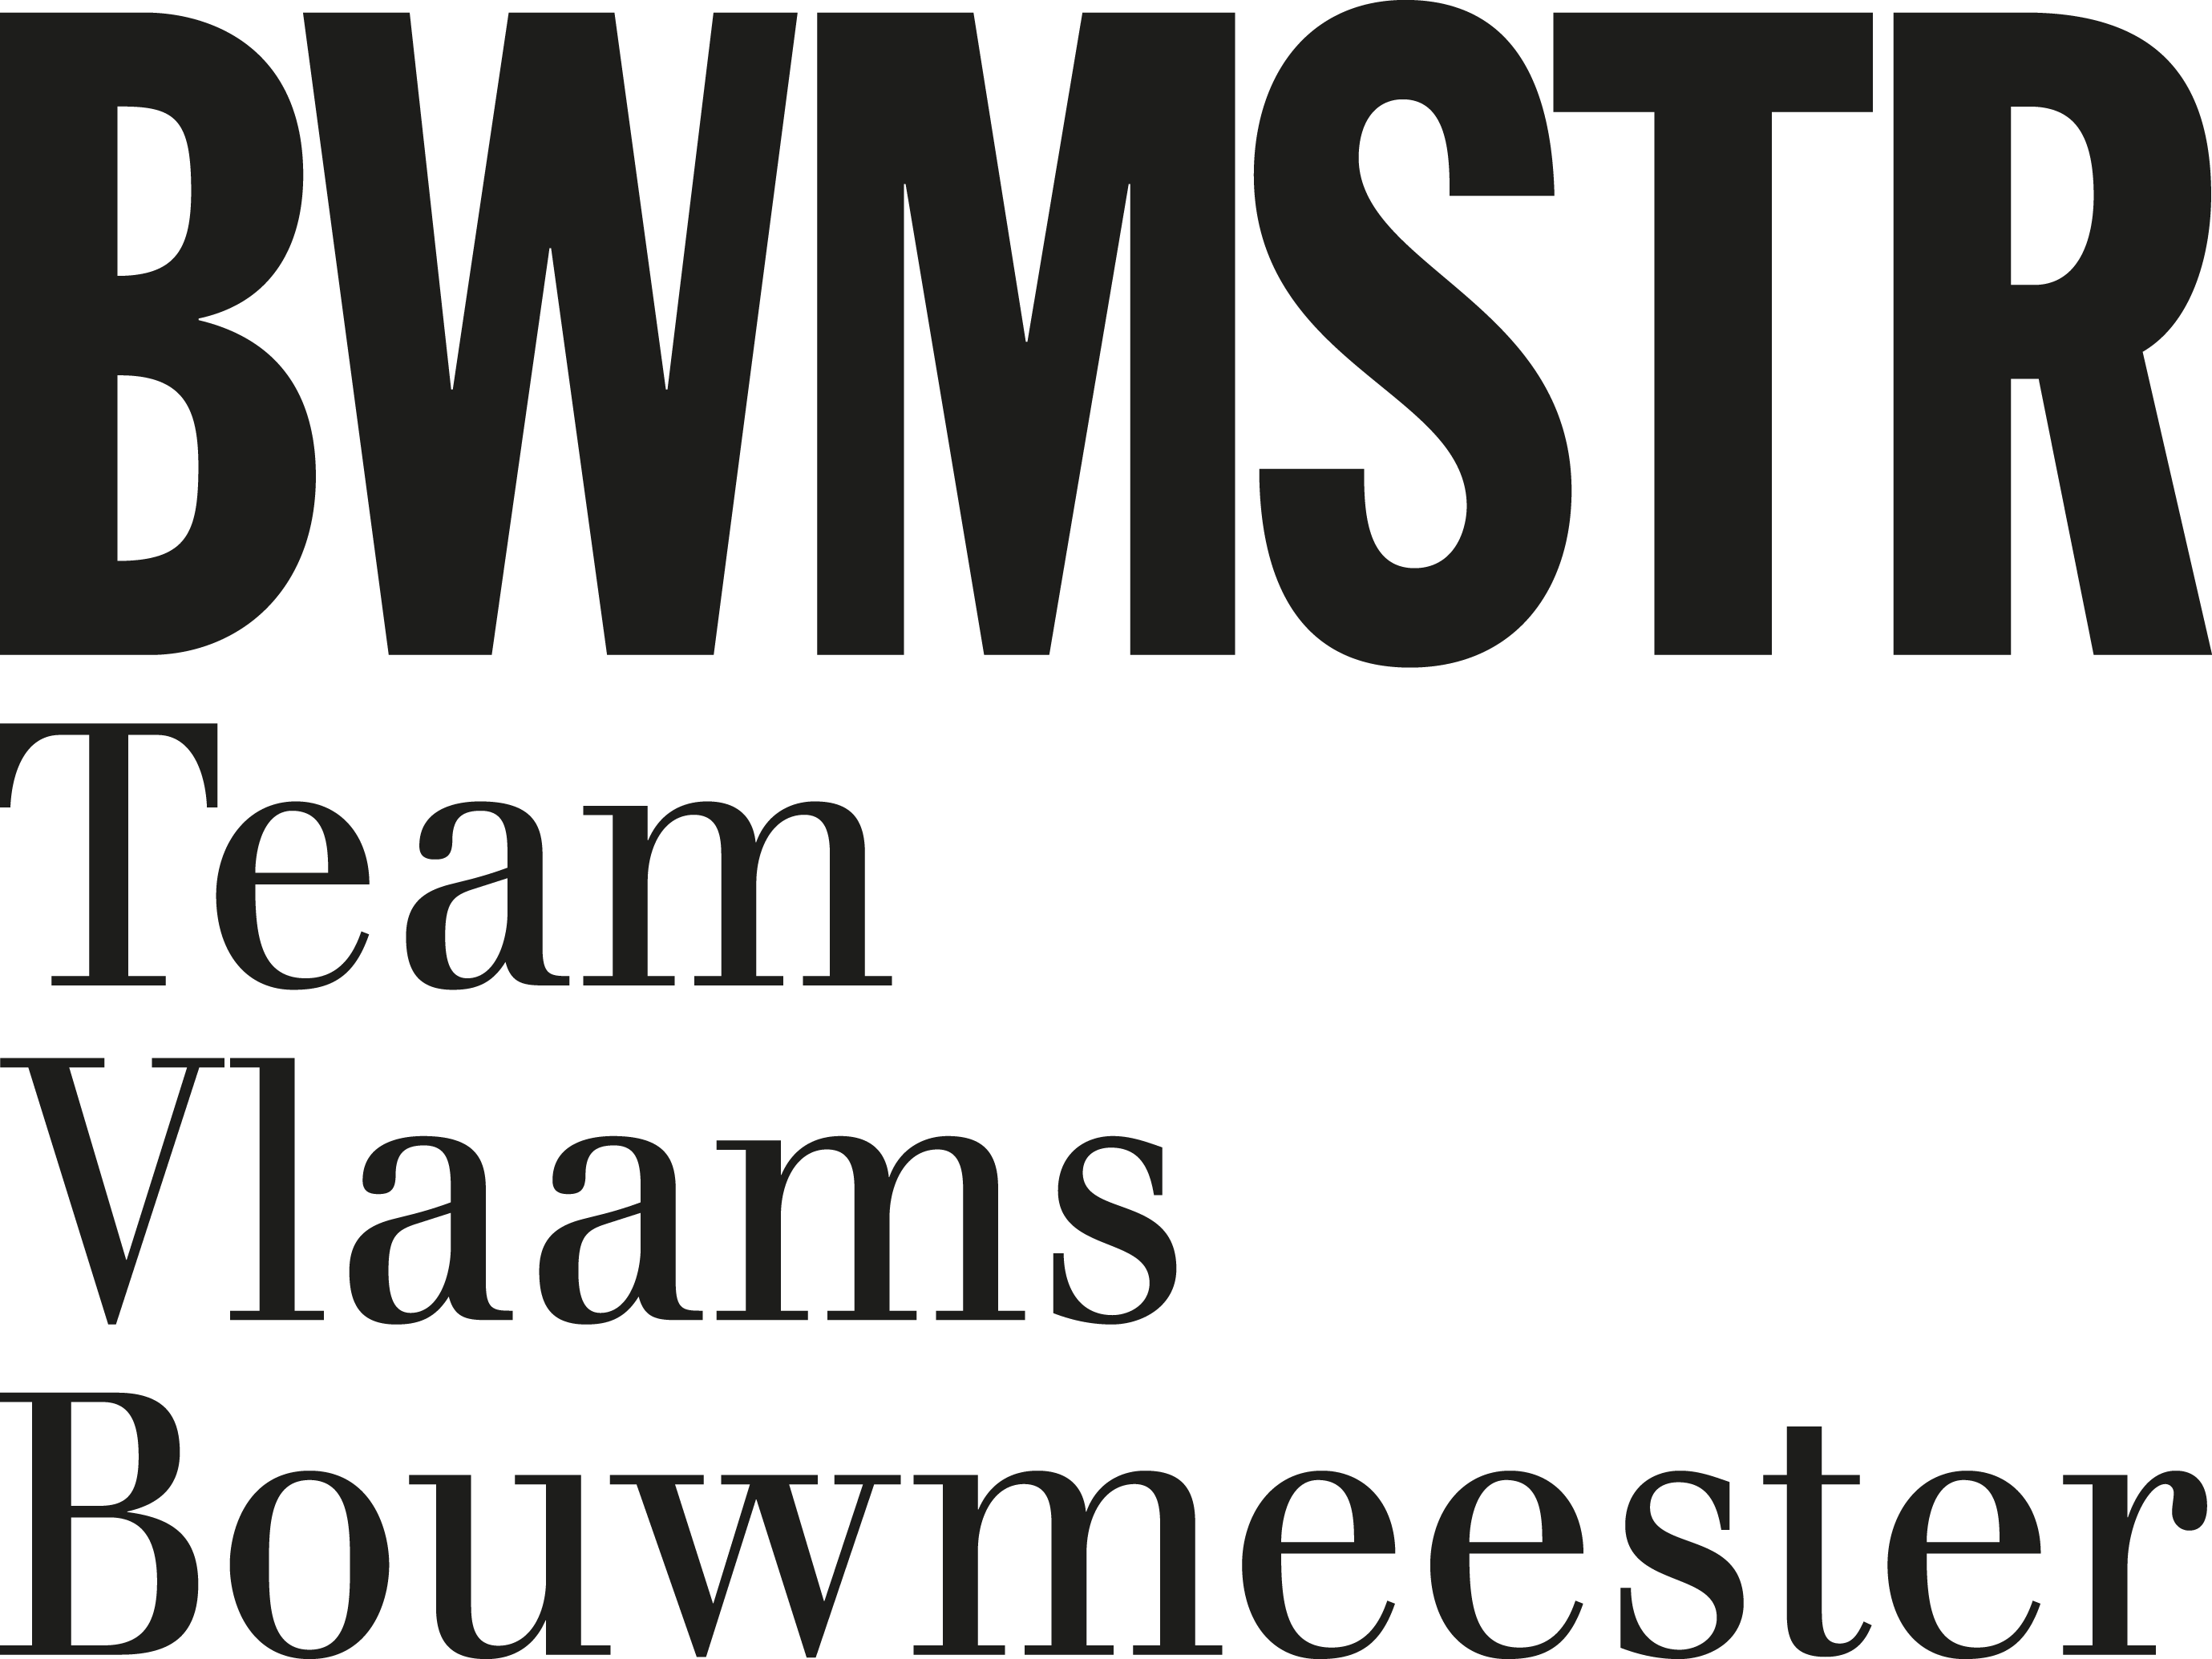 Team Vlaams Bouwmeester